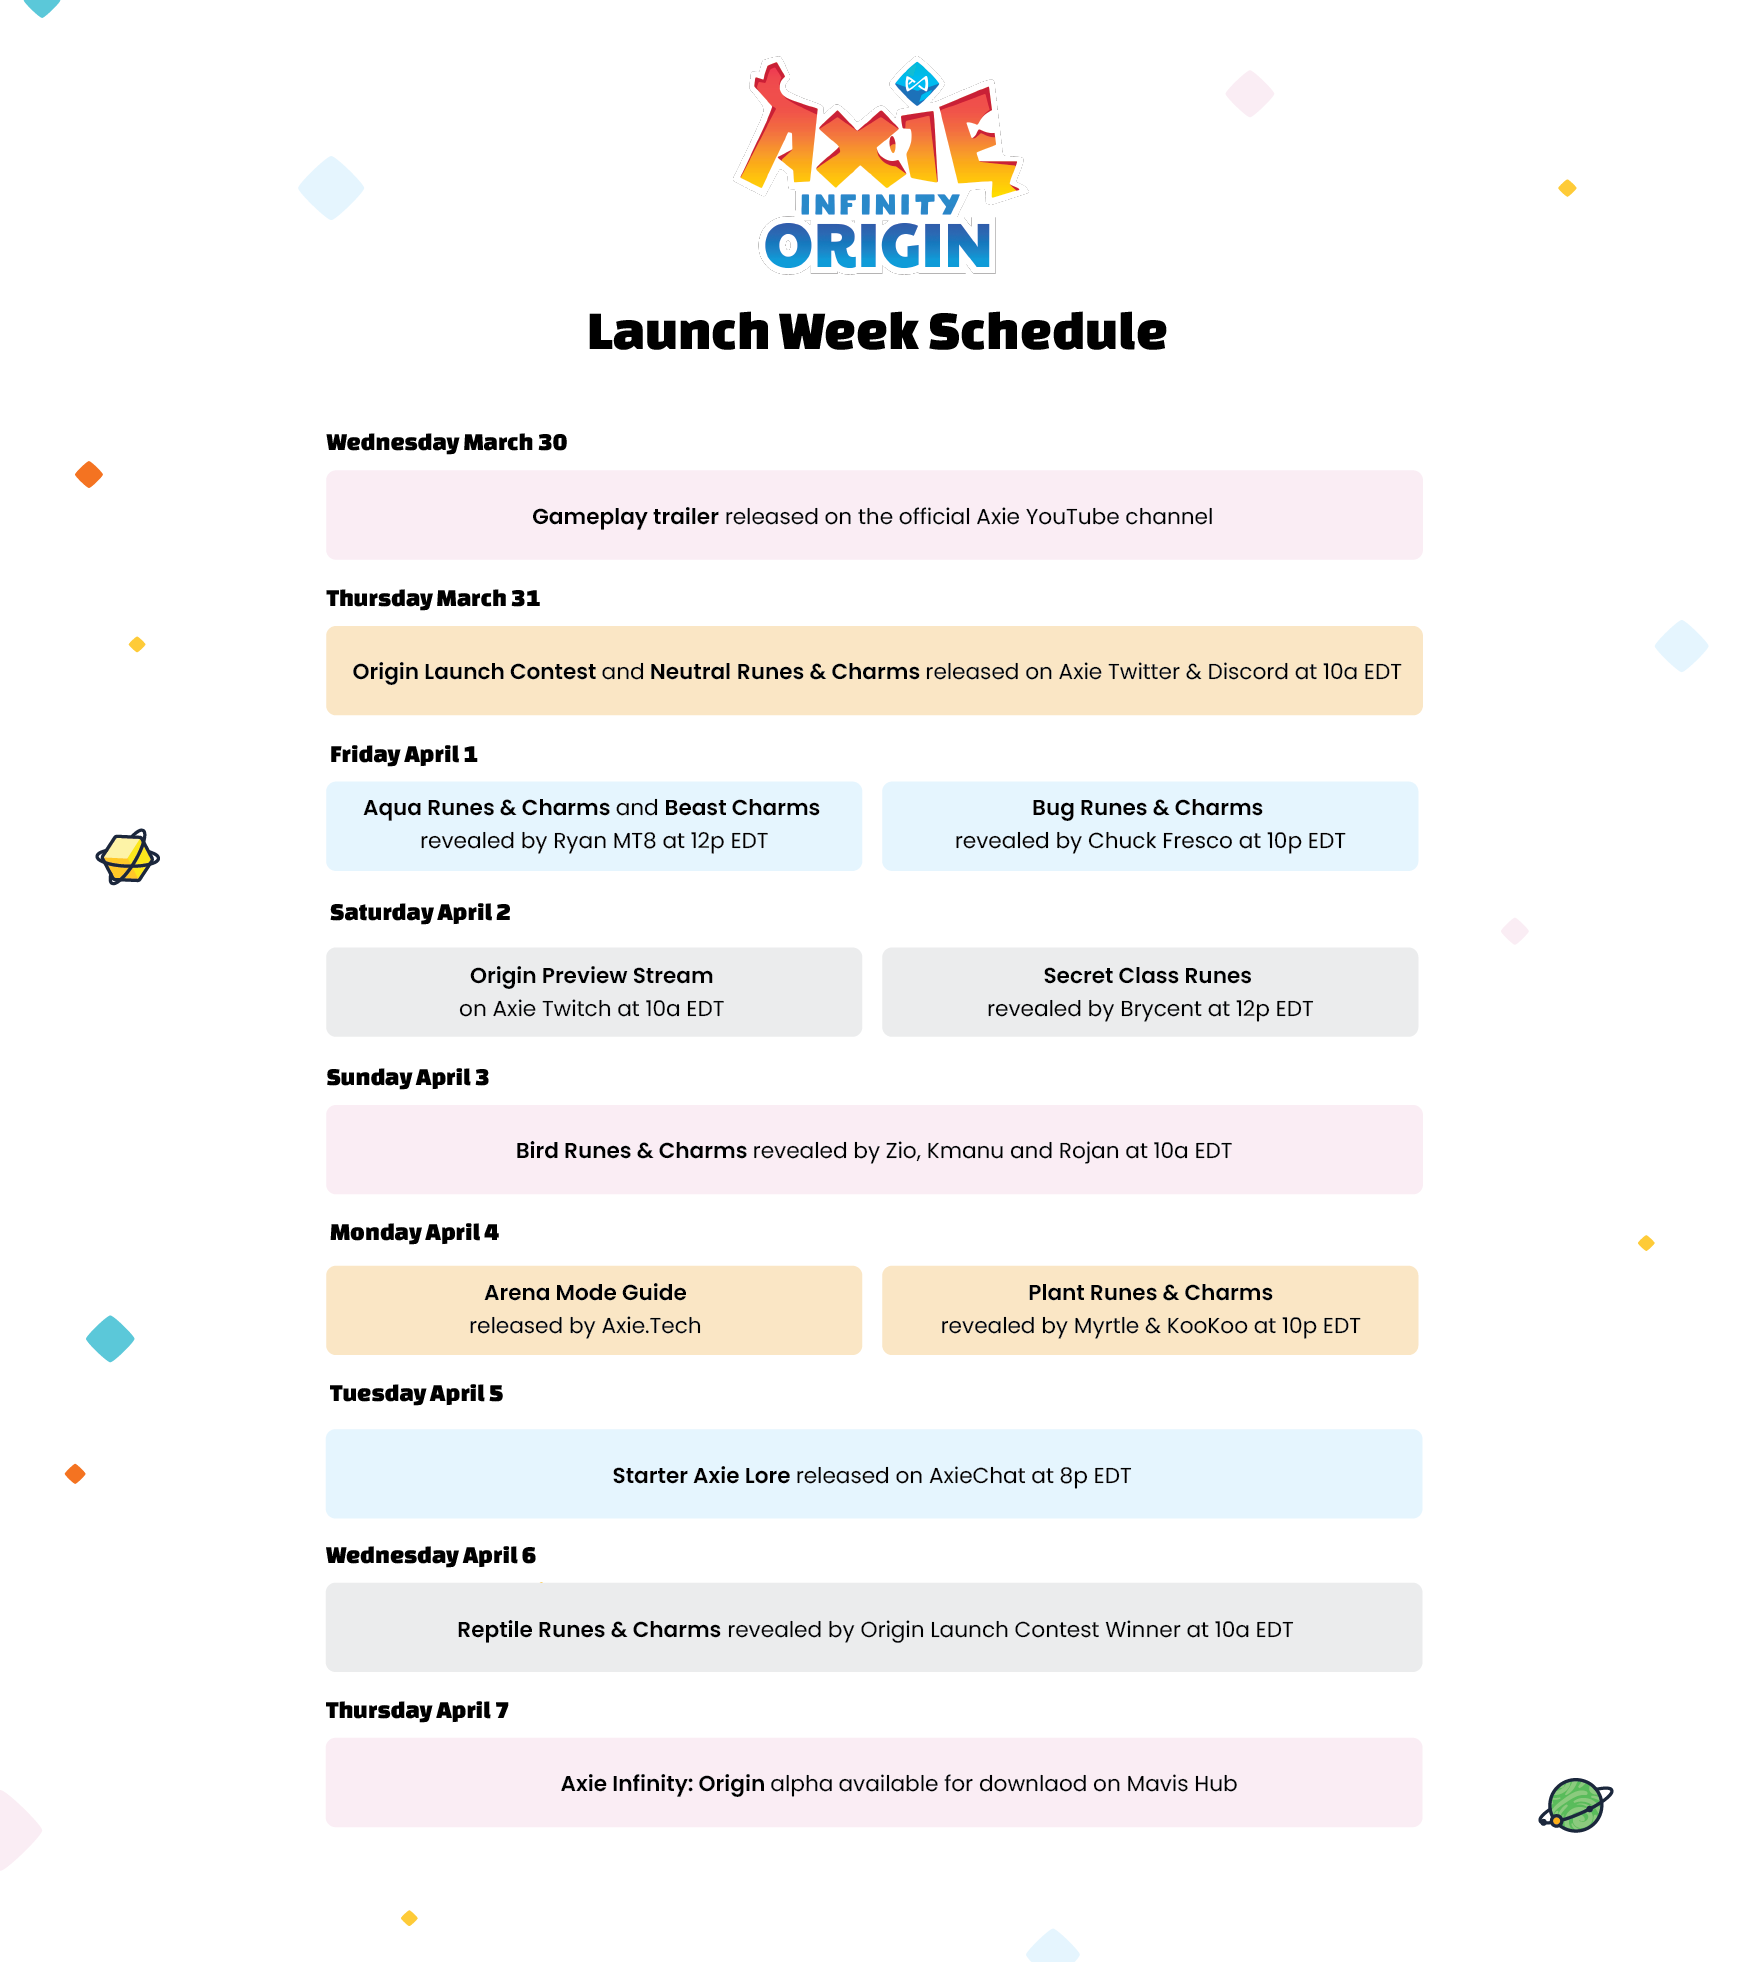 Tuần ra mắt Origin đã làm cả cộng đồng game Việt Nam nói chung và fan của Origin nói riêng háo hức chờ đợi. Đây là một sự kiện lớn trong làng game Việt, đánh dấu sự xuất hiện của một sản phẩm game chất lượng và đột phá. Hãy cùng xem hình ảnh liên quan để cảm nhận lại không khí náo nức của Origin Launch Week.